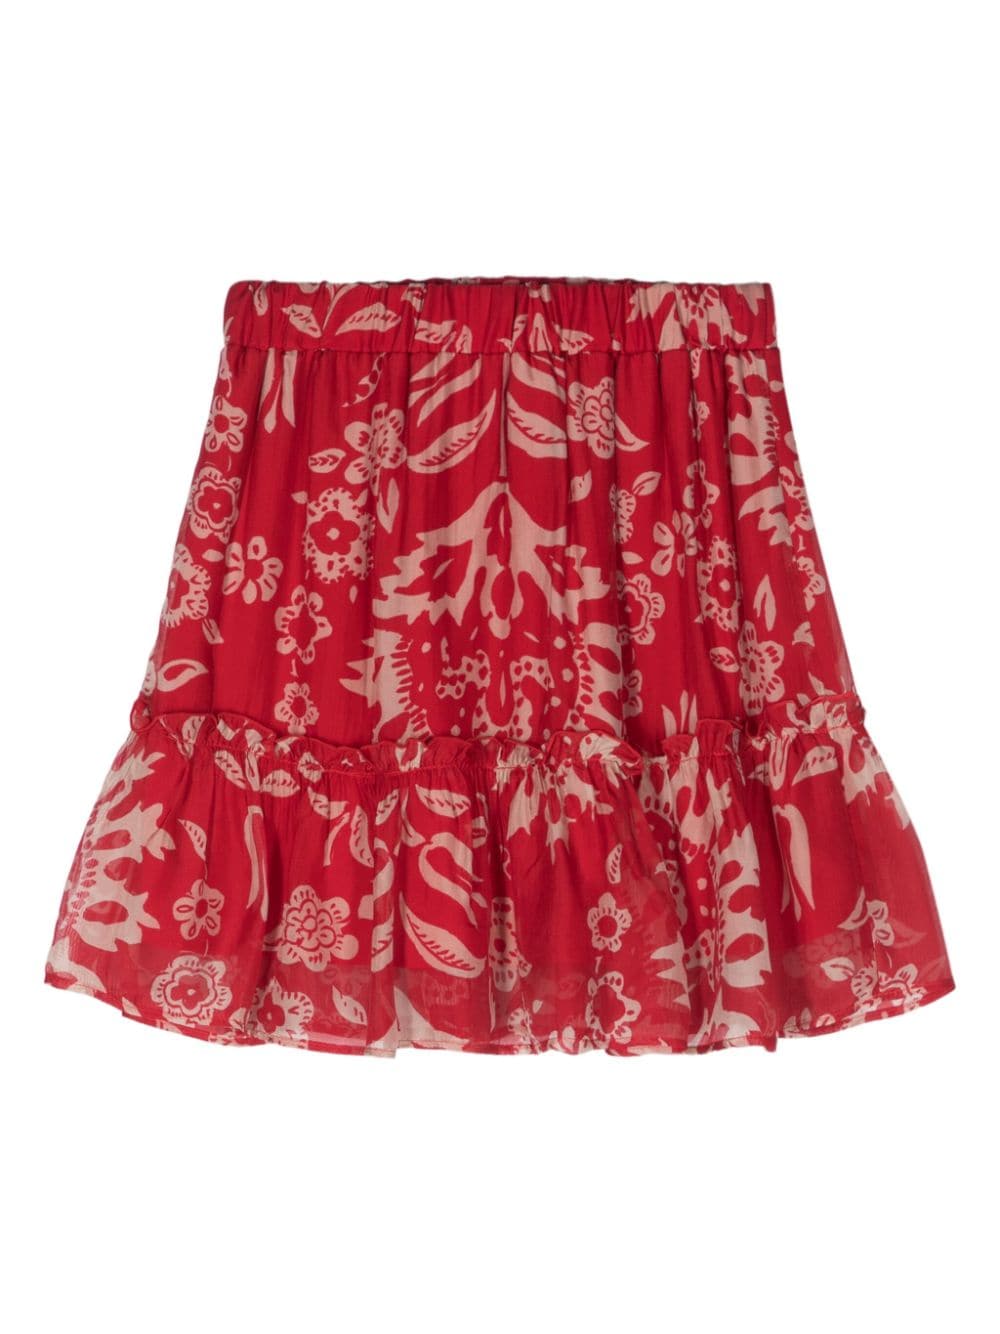 LIU JO floral-print chiffon miniskirt - Rood